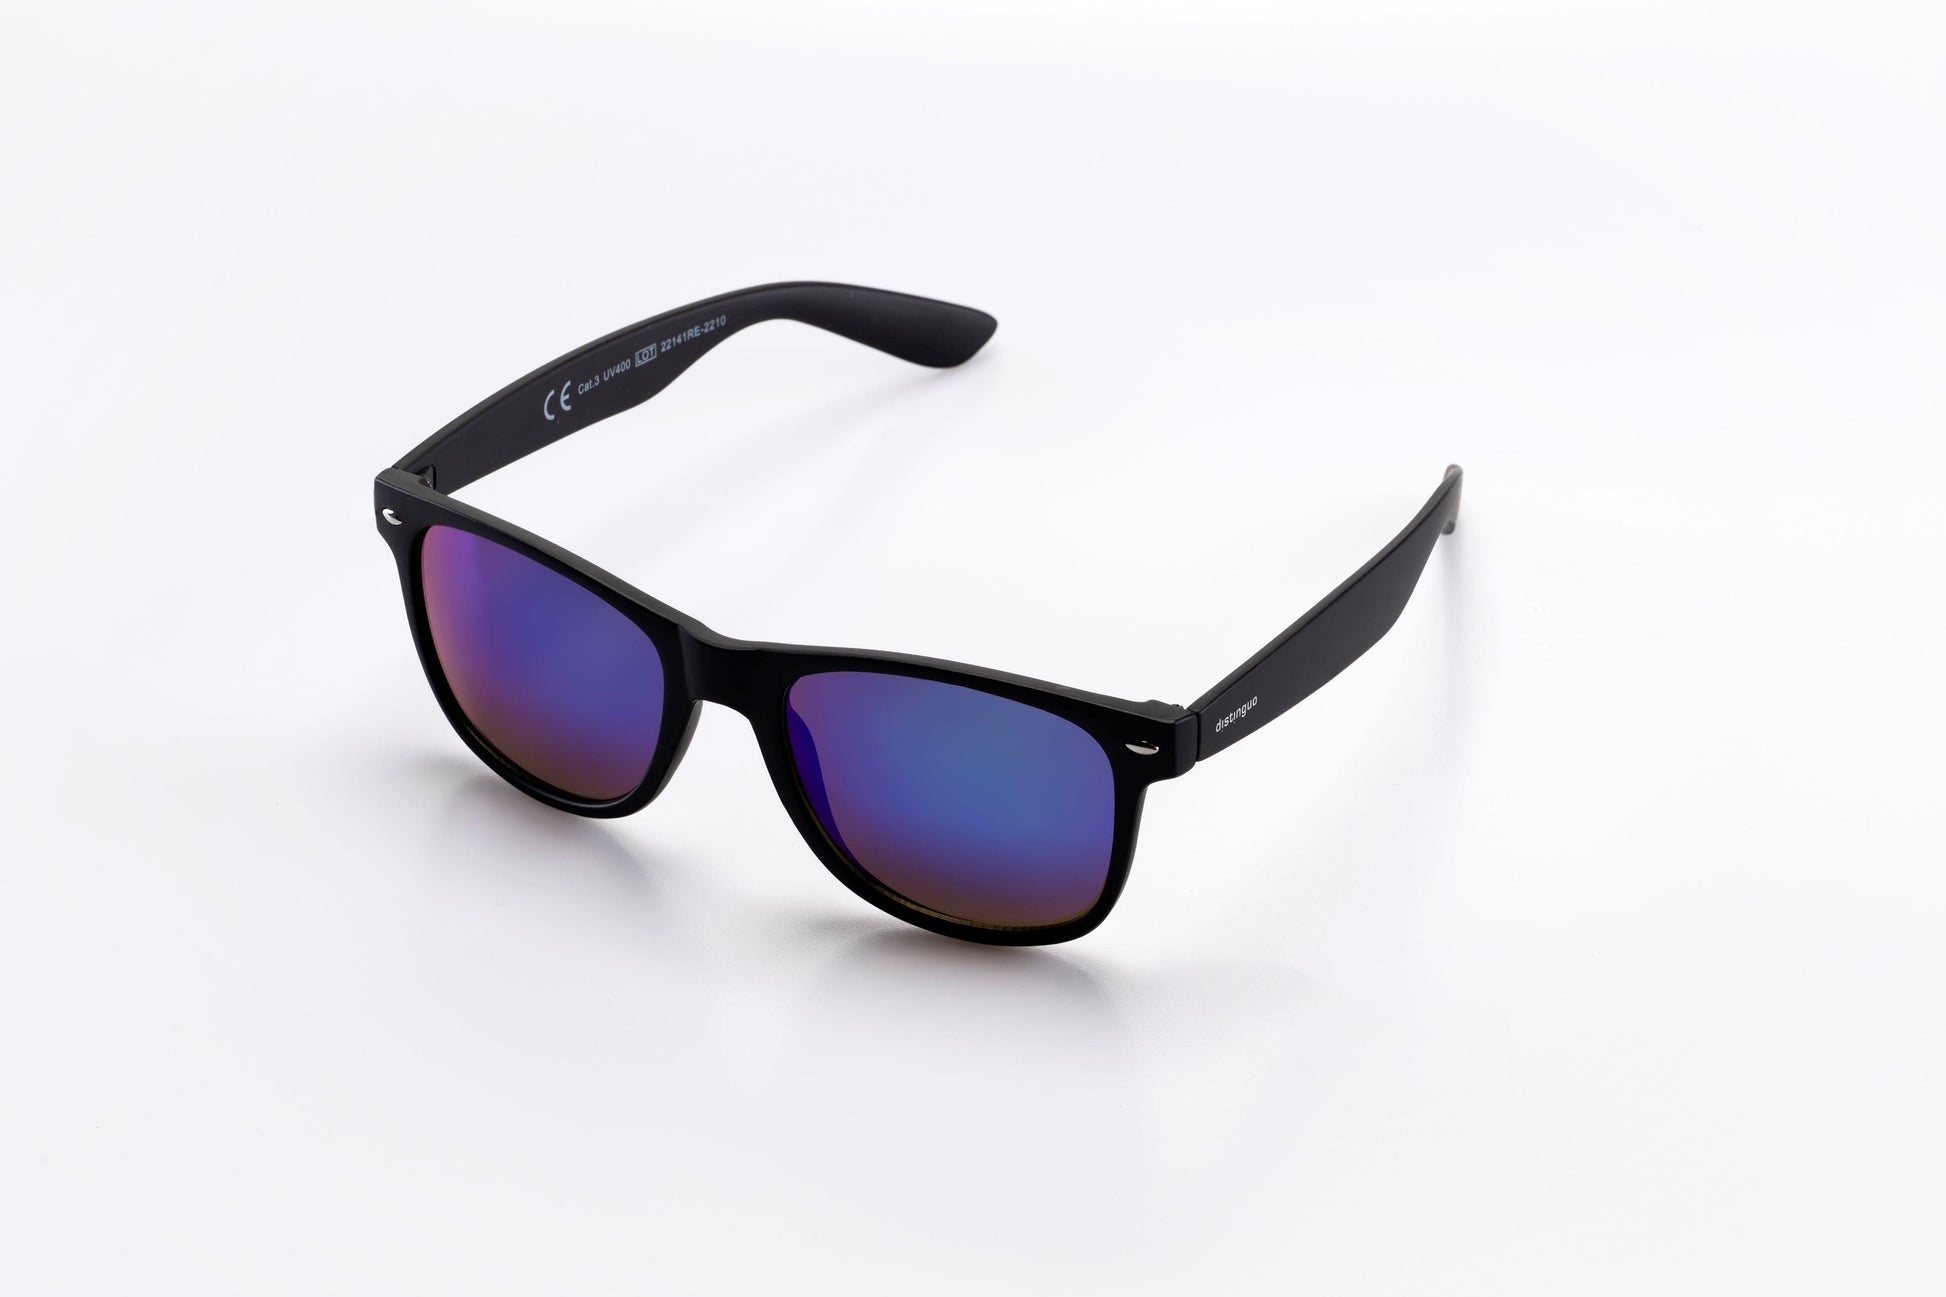 Occhiali da sole Distinguo 503.1 modello Classico, montatura colore nero con finitura opaca e lenti effetto specchio blu.